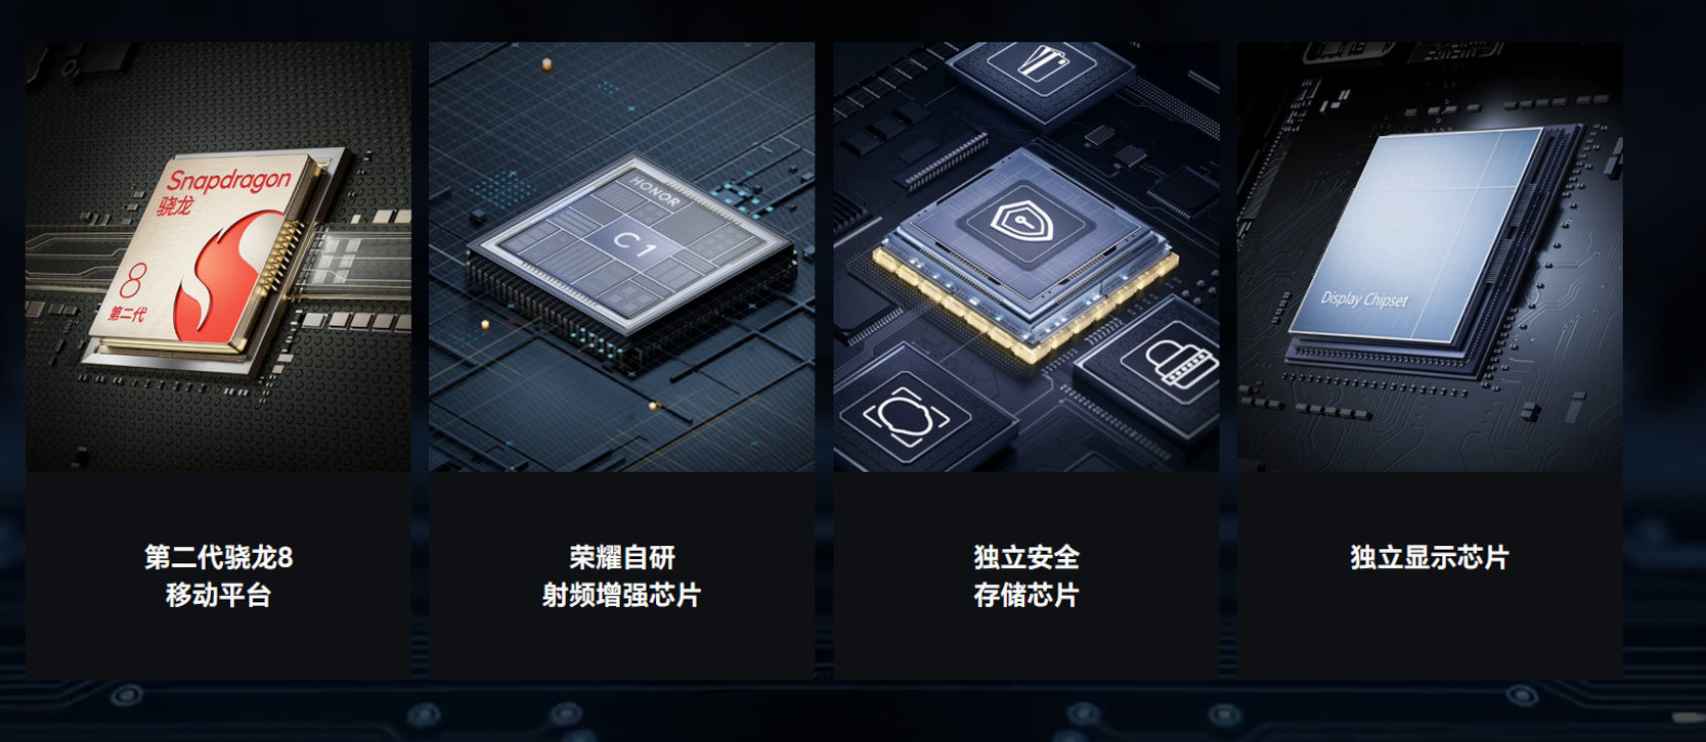 El nuevo chip de Honor promete mejorar la velocidad y cobertura móvil